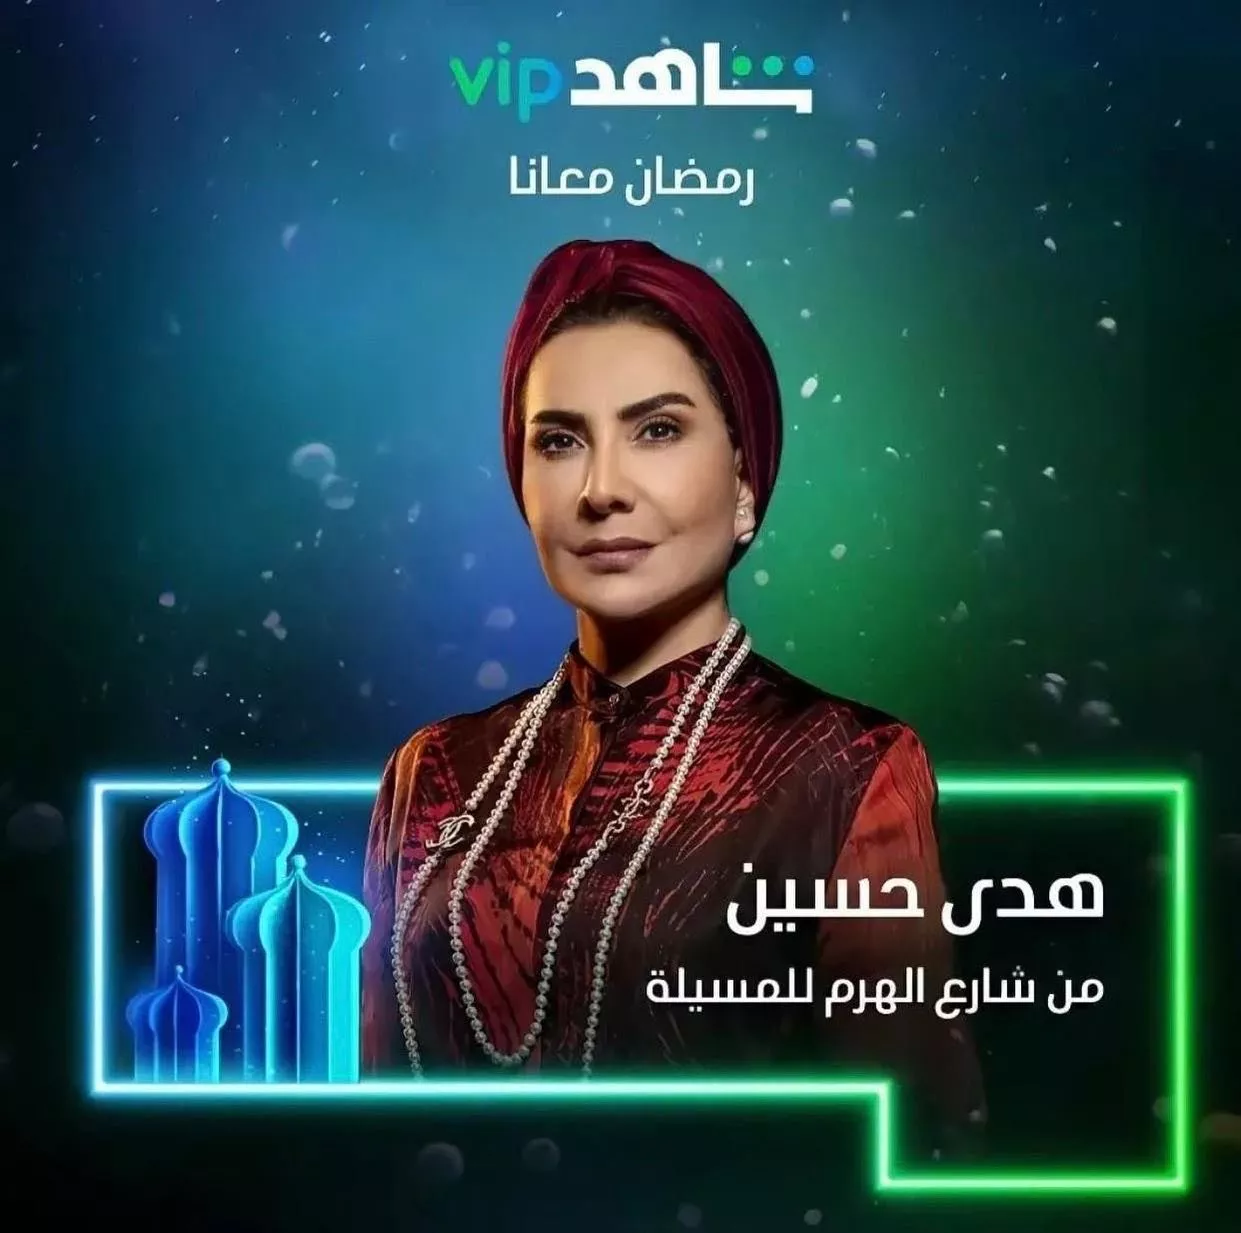 مسلسل من شارع الهرم إلى المسلية في رمضان 2022 على شاهد vip